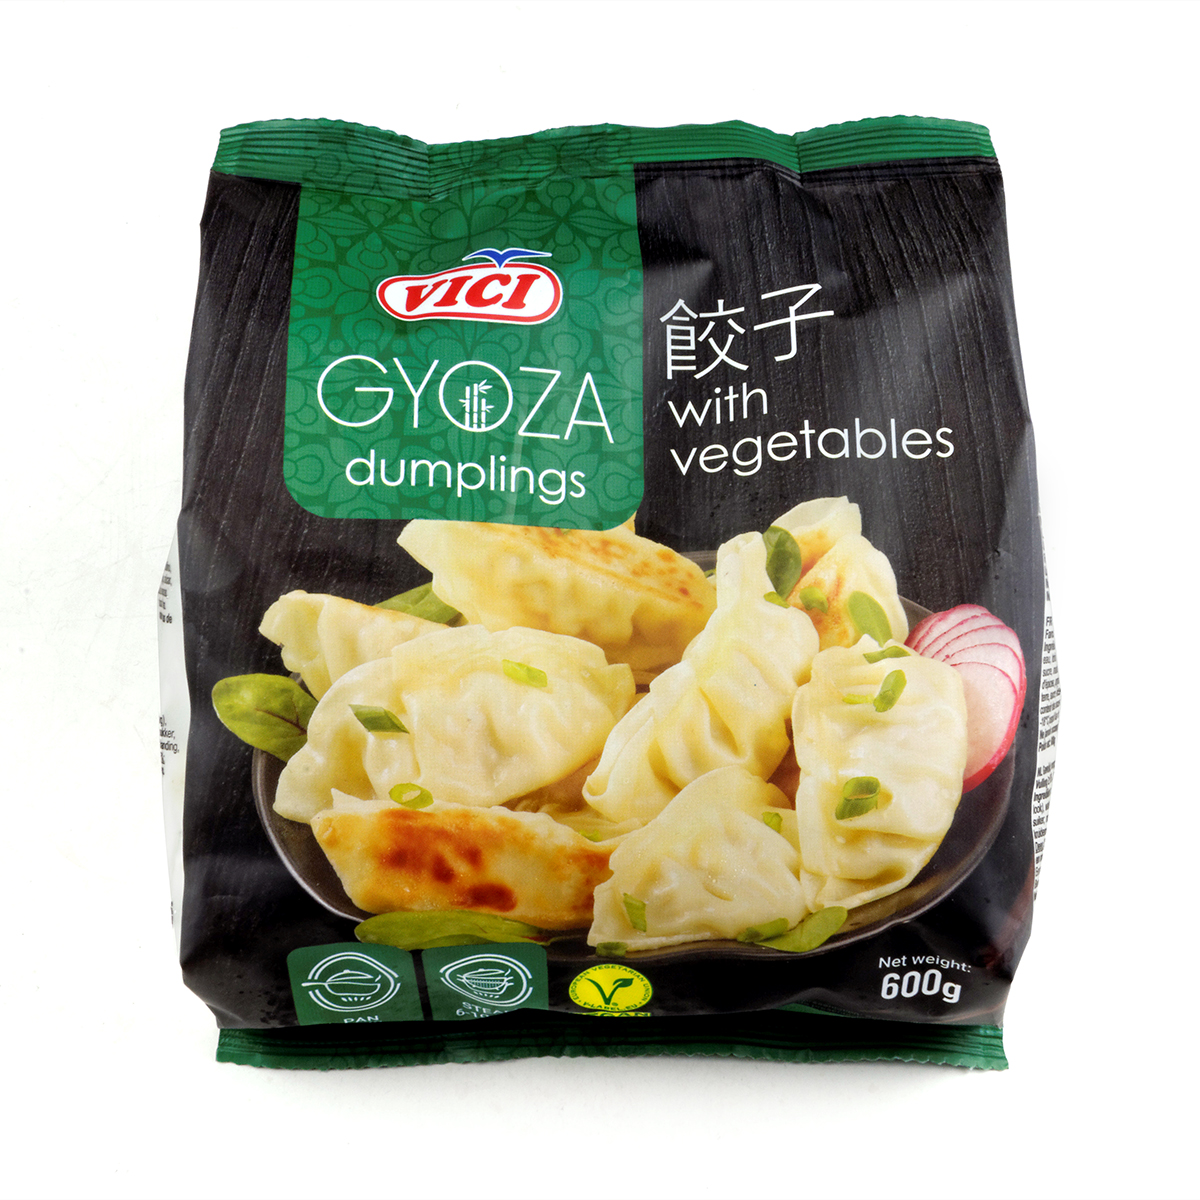 Exclusiv in magazine - Gyoza cu legume VICI 600g, asianfood.ro